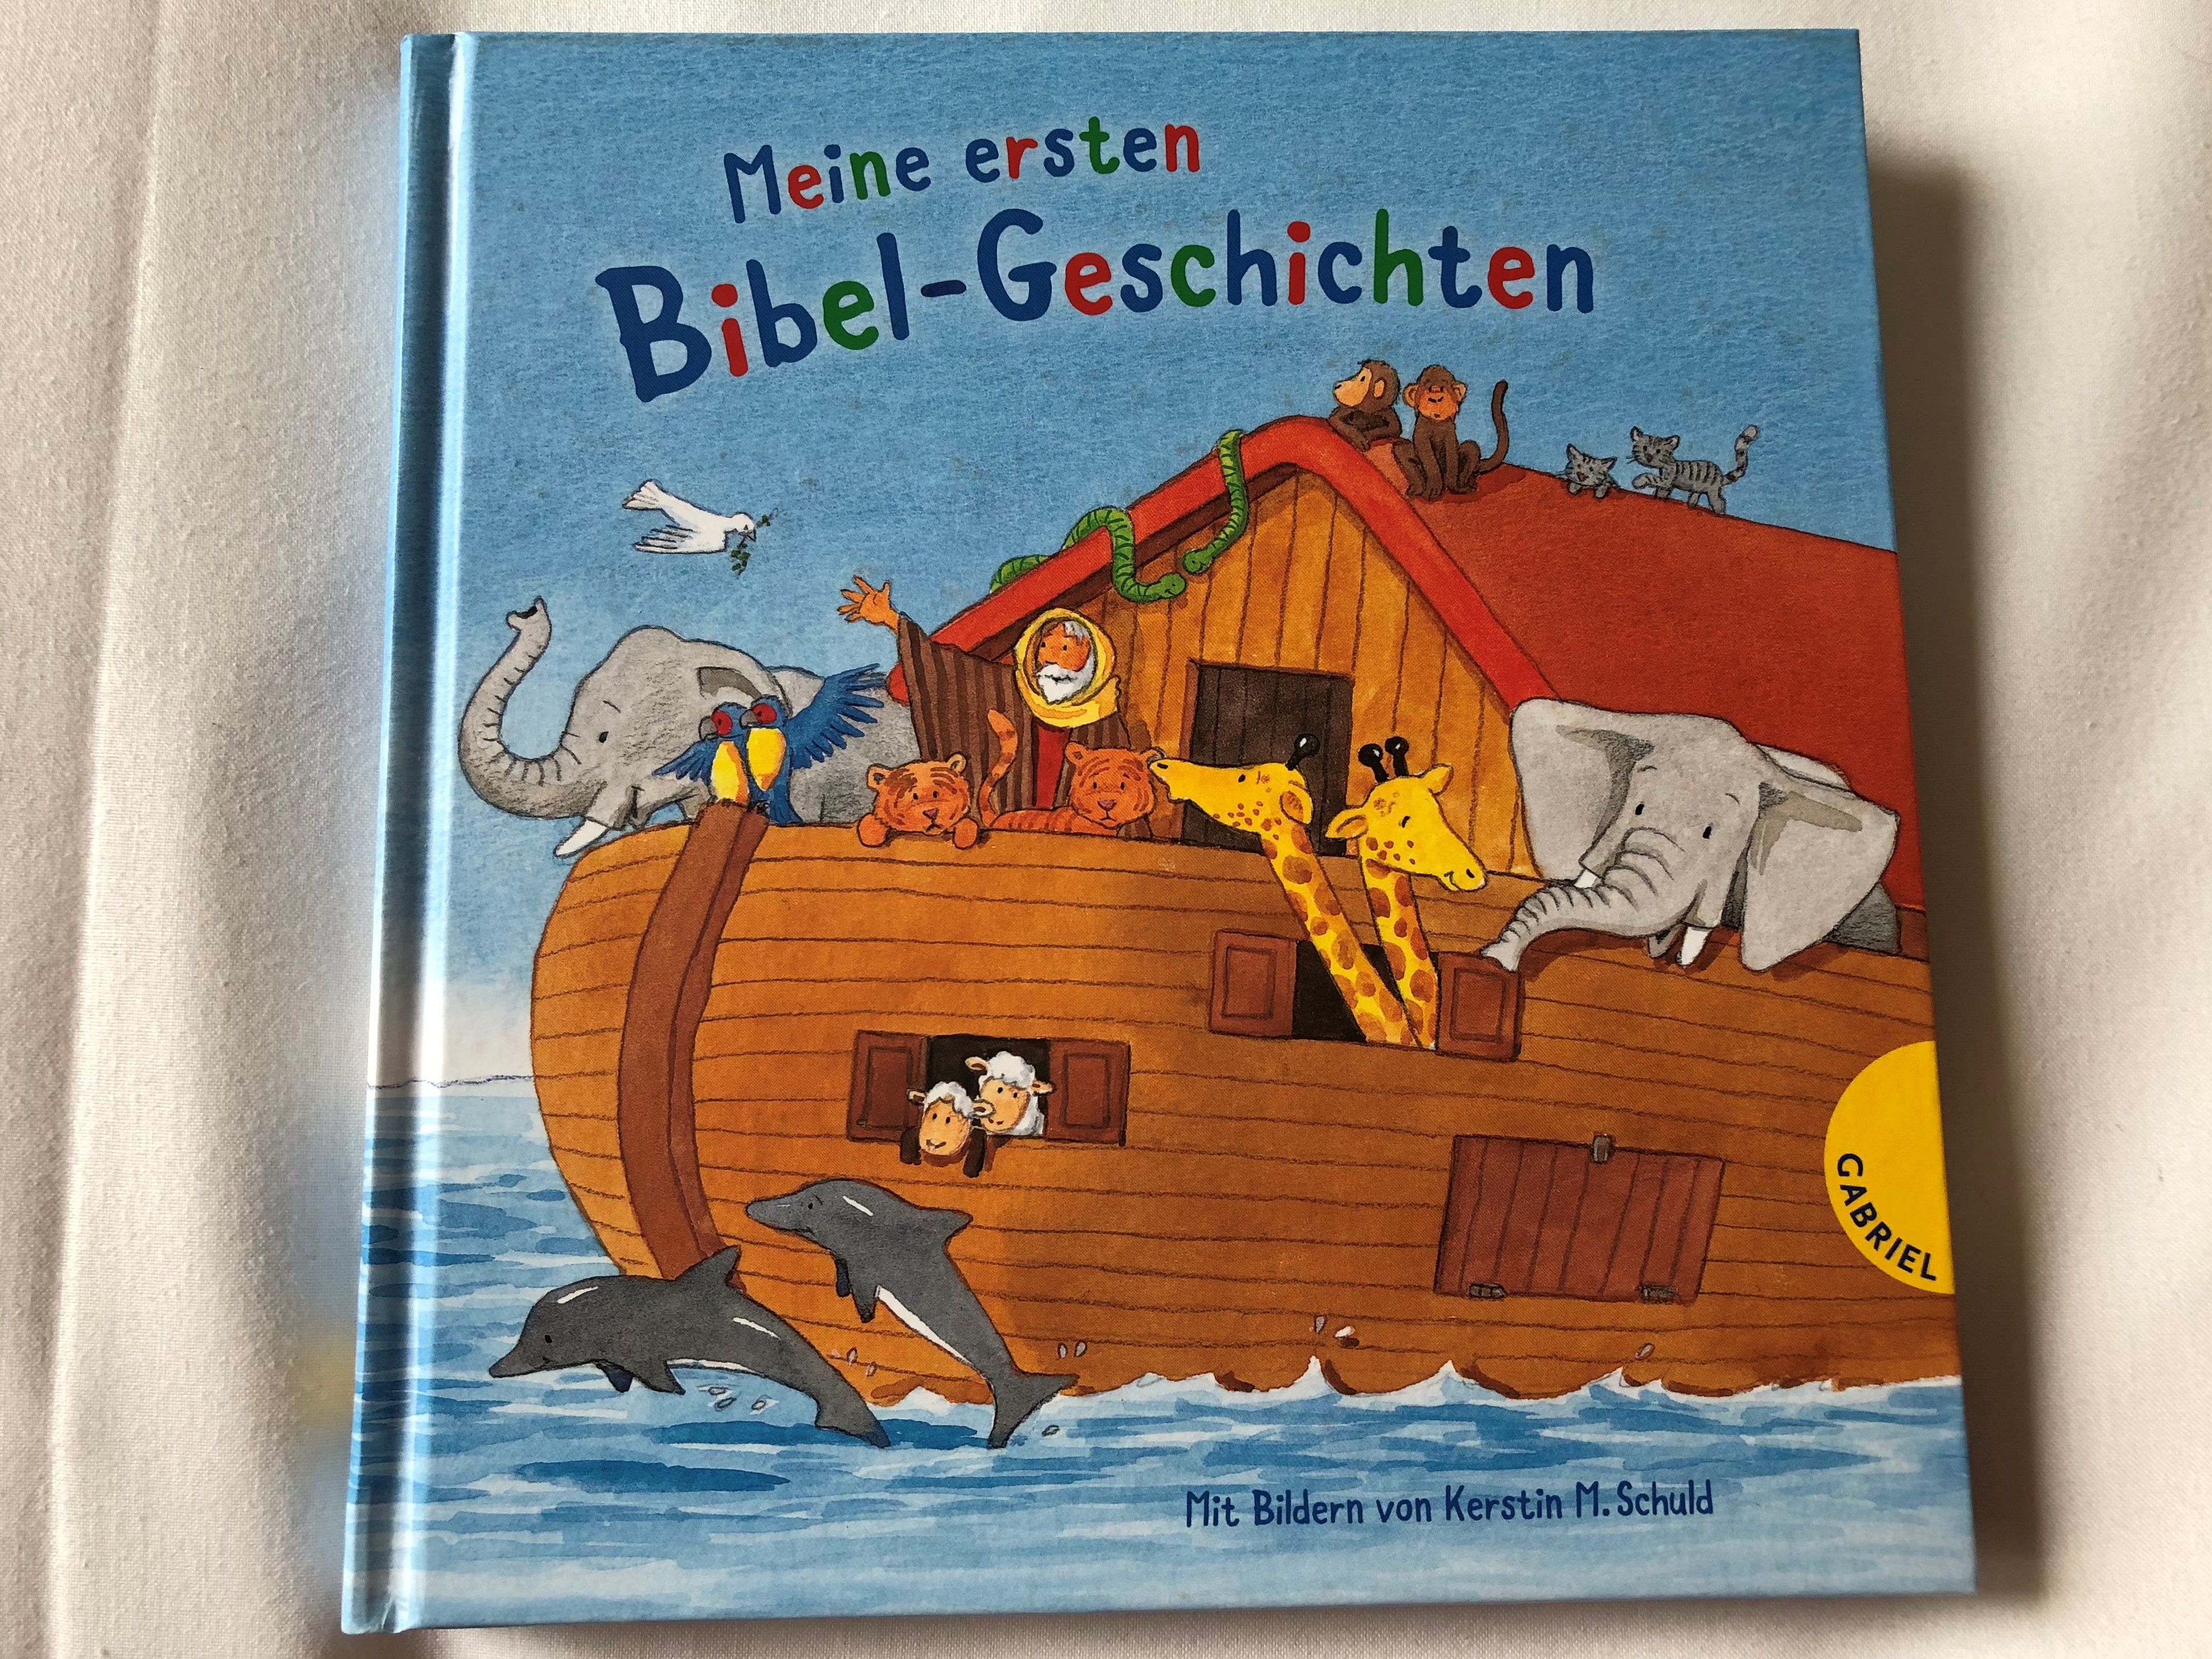 meine-ersten-bibel-geschichten-by-d-rte-beutler-kerstin-m.-schuld-my-first-bible-story-in-german-language-4th-edition-full-color-pages-hardcover-gabriel-verlag-2018-1-.jpg